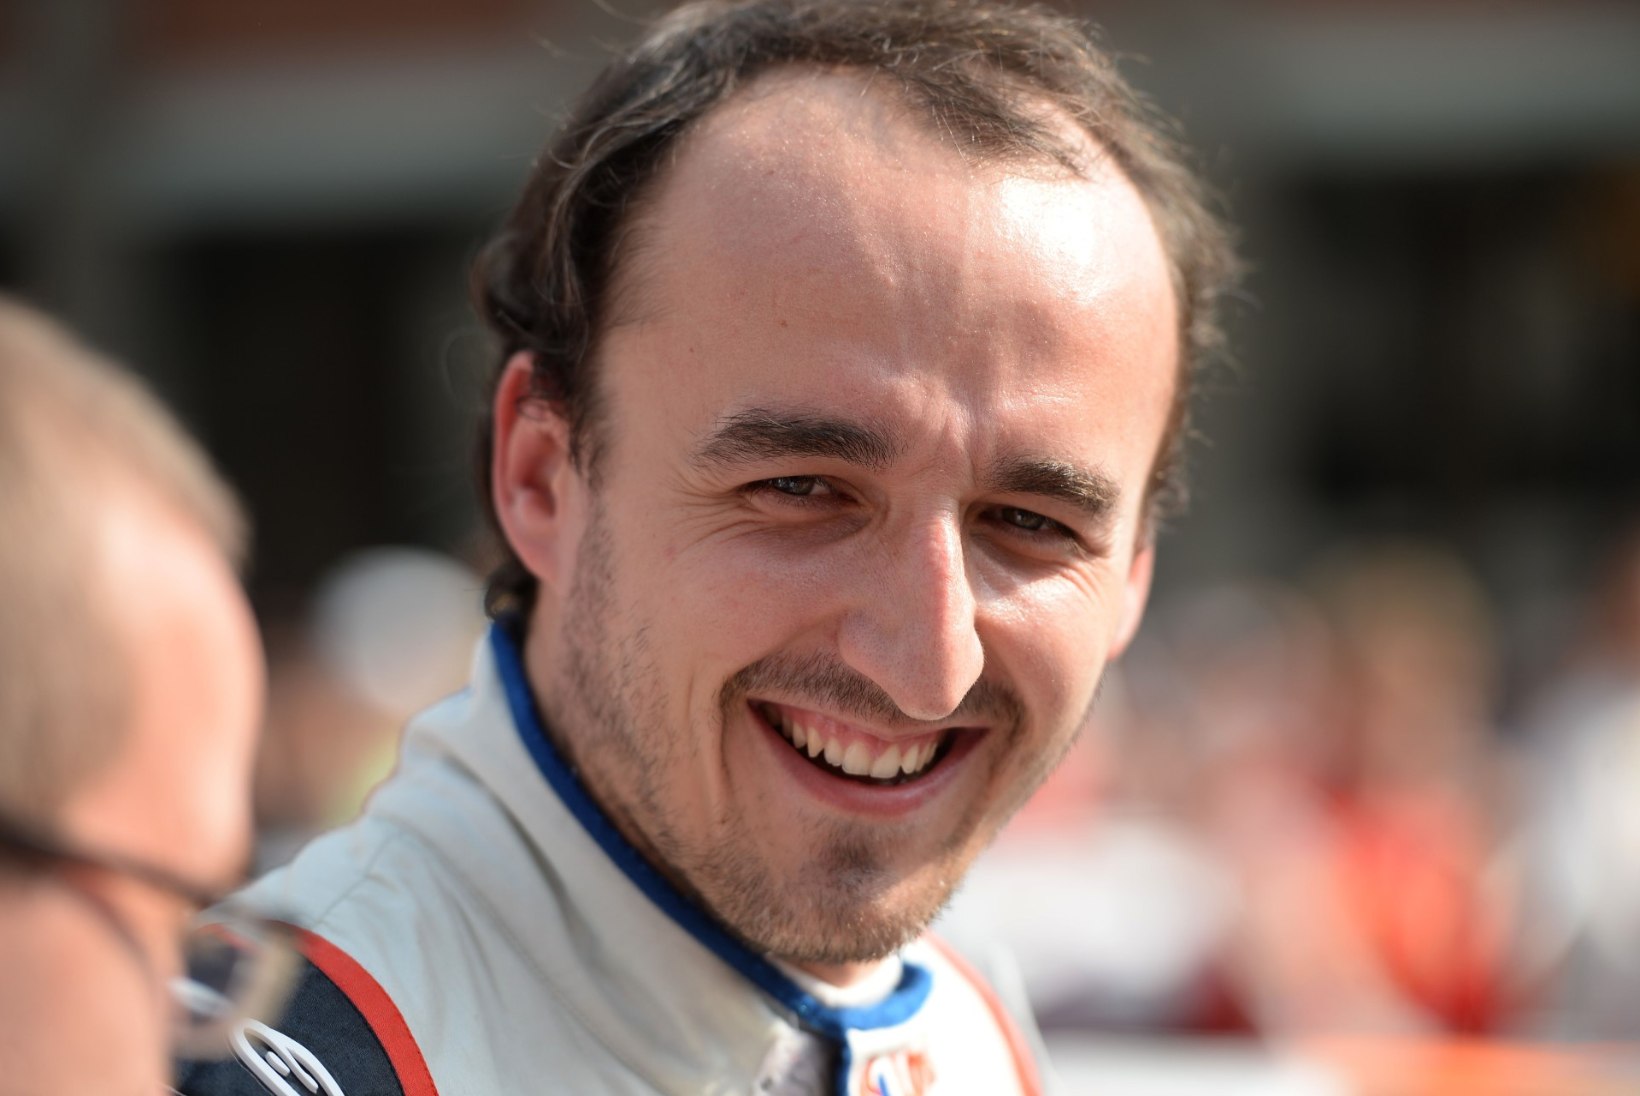 Robert Kubica istus pärast ränka õnnetust esimest korda vormel-1 auto rooli